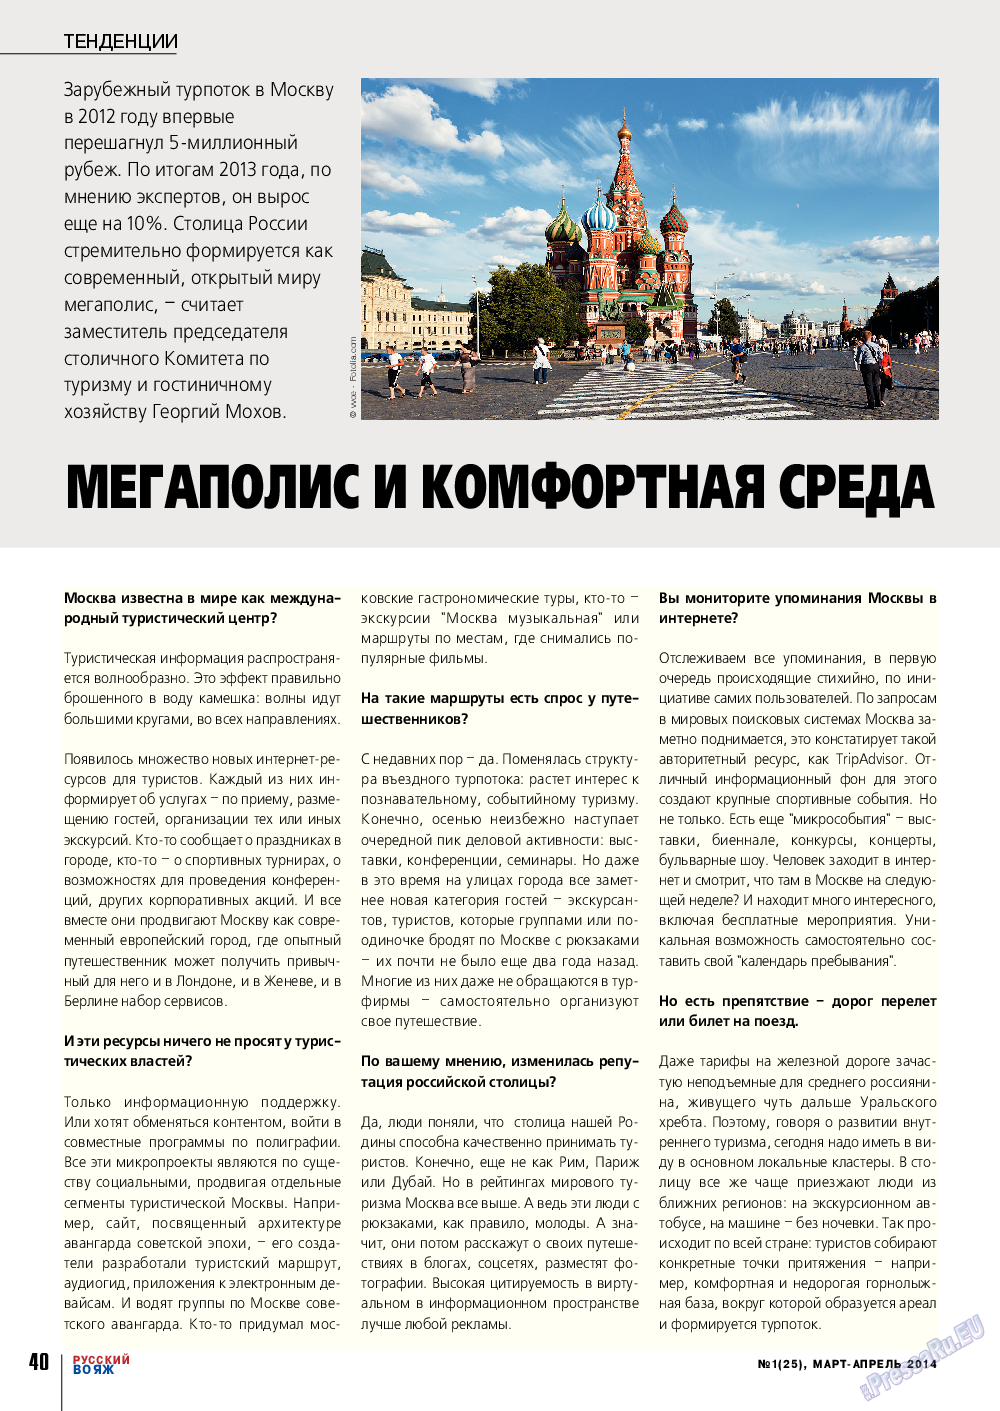 Русский вояж (журнал). 2014 год, номер 1, стр. 40